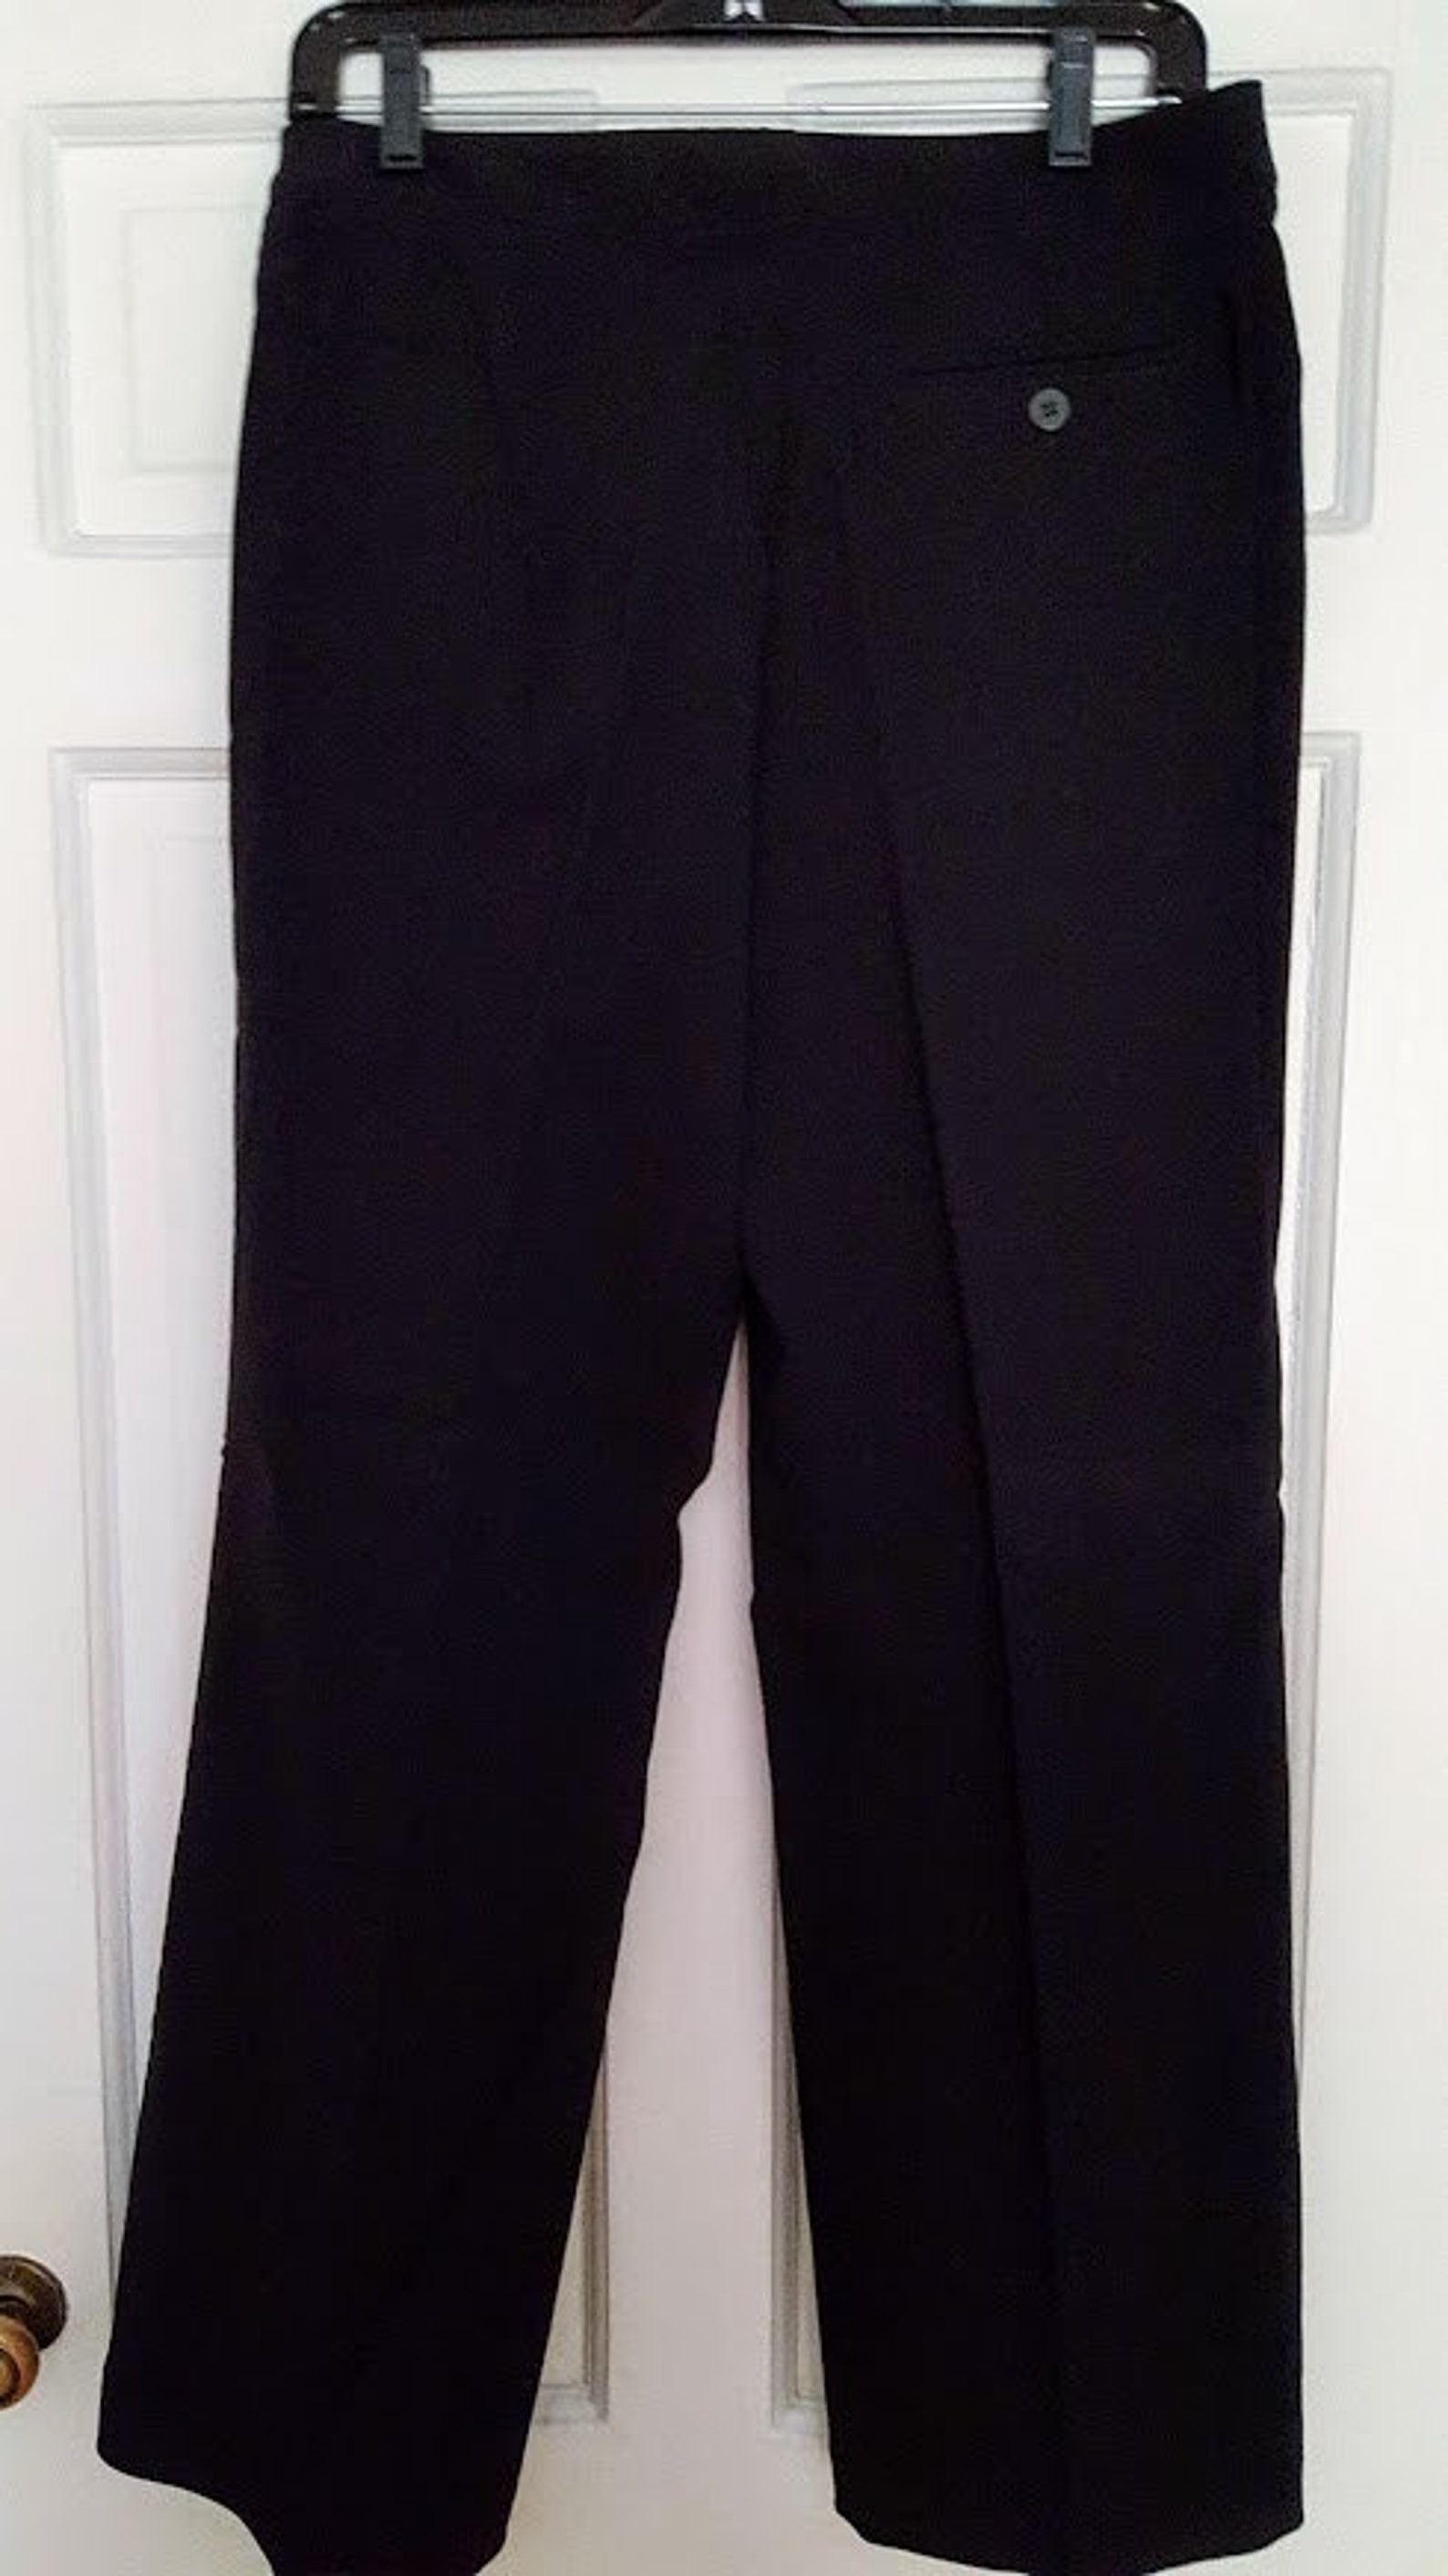 Dalia Black Dress Pants Trousers. Rayon Nylon Spandex. Size - Etsy